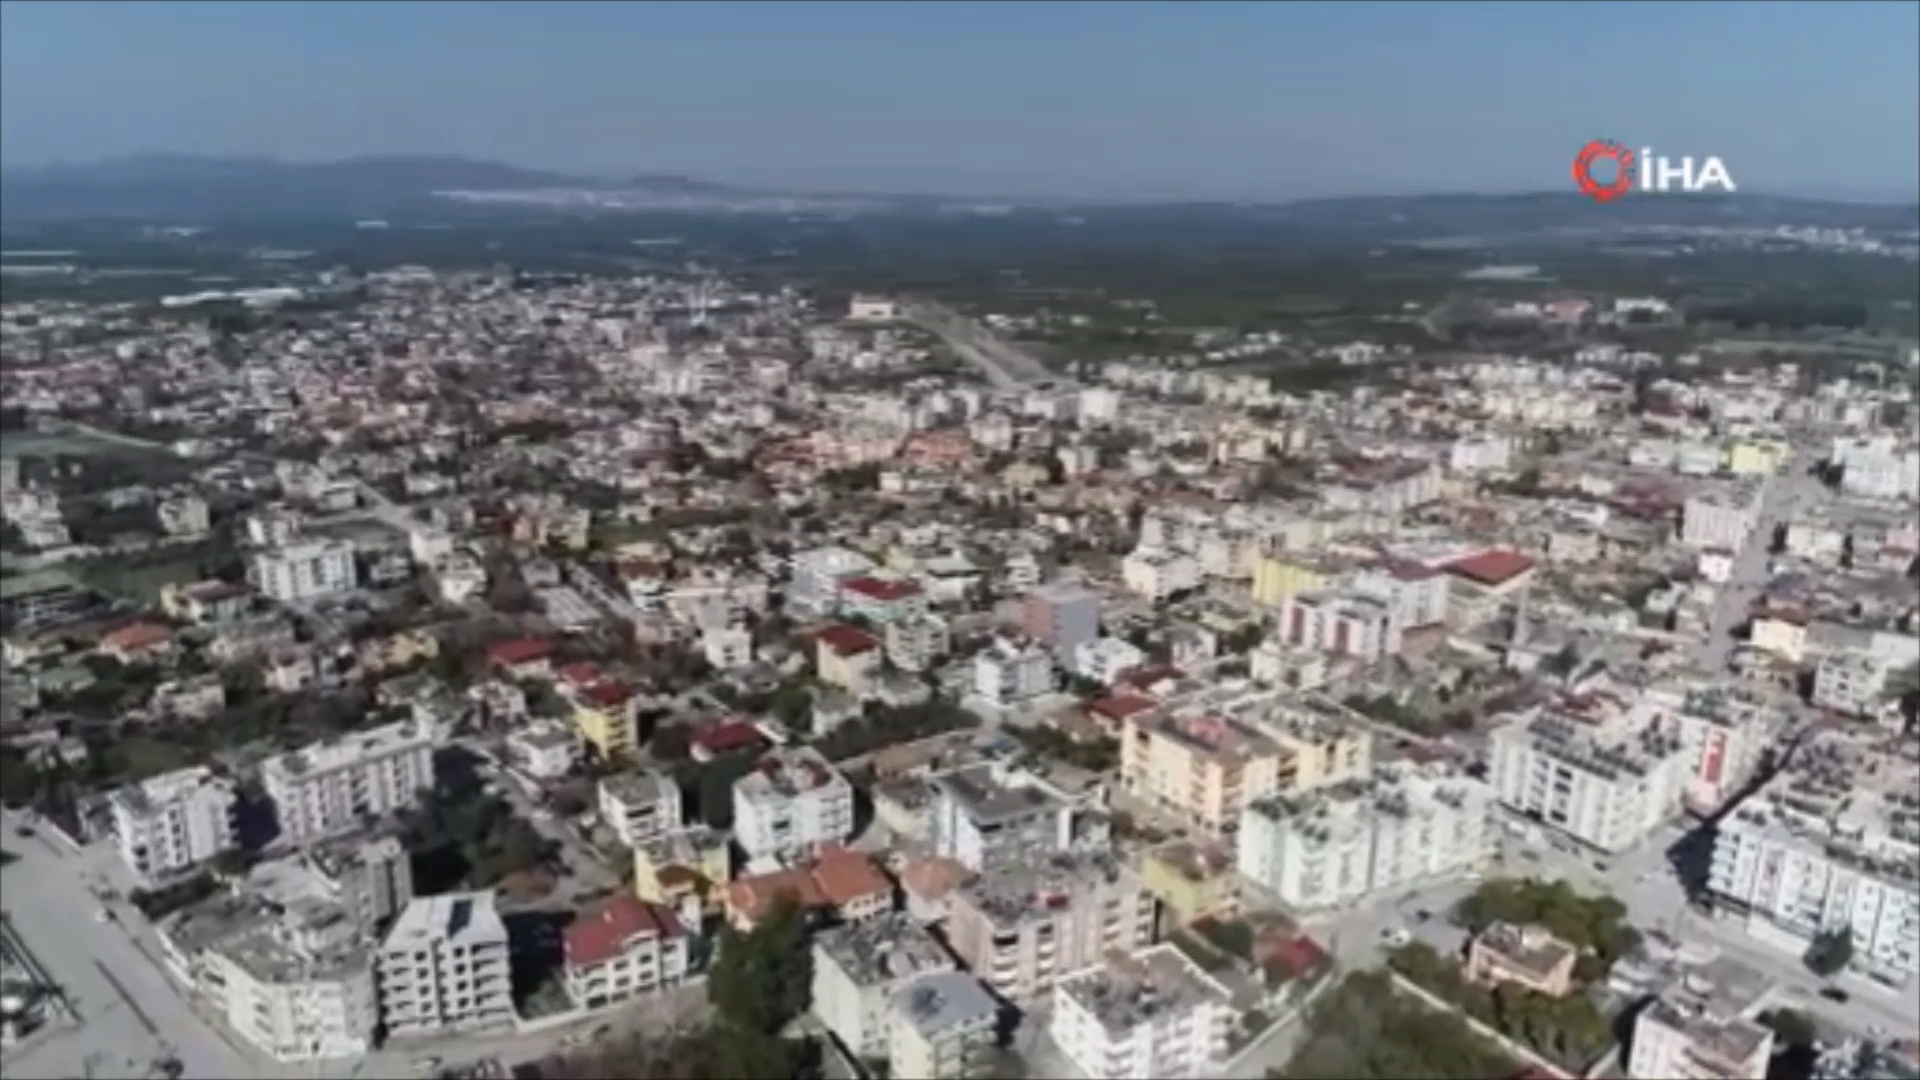 Не пострадал ни один житель: в городе на юге Турции во время землетрясения уцелели все дома, мэр раскрыл "секрет". Фото 